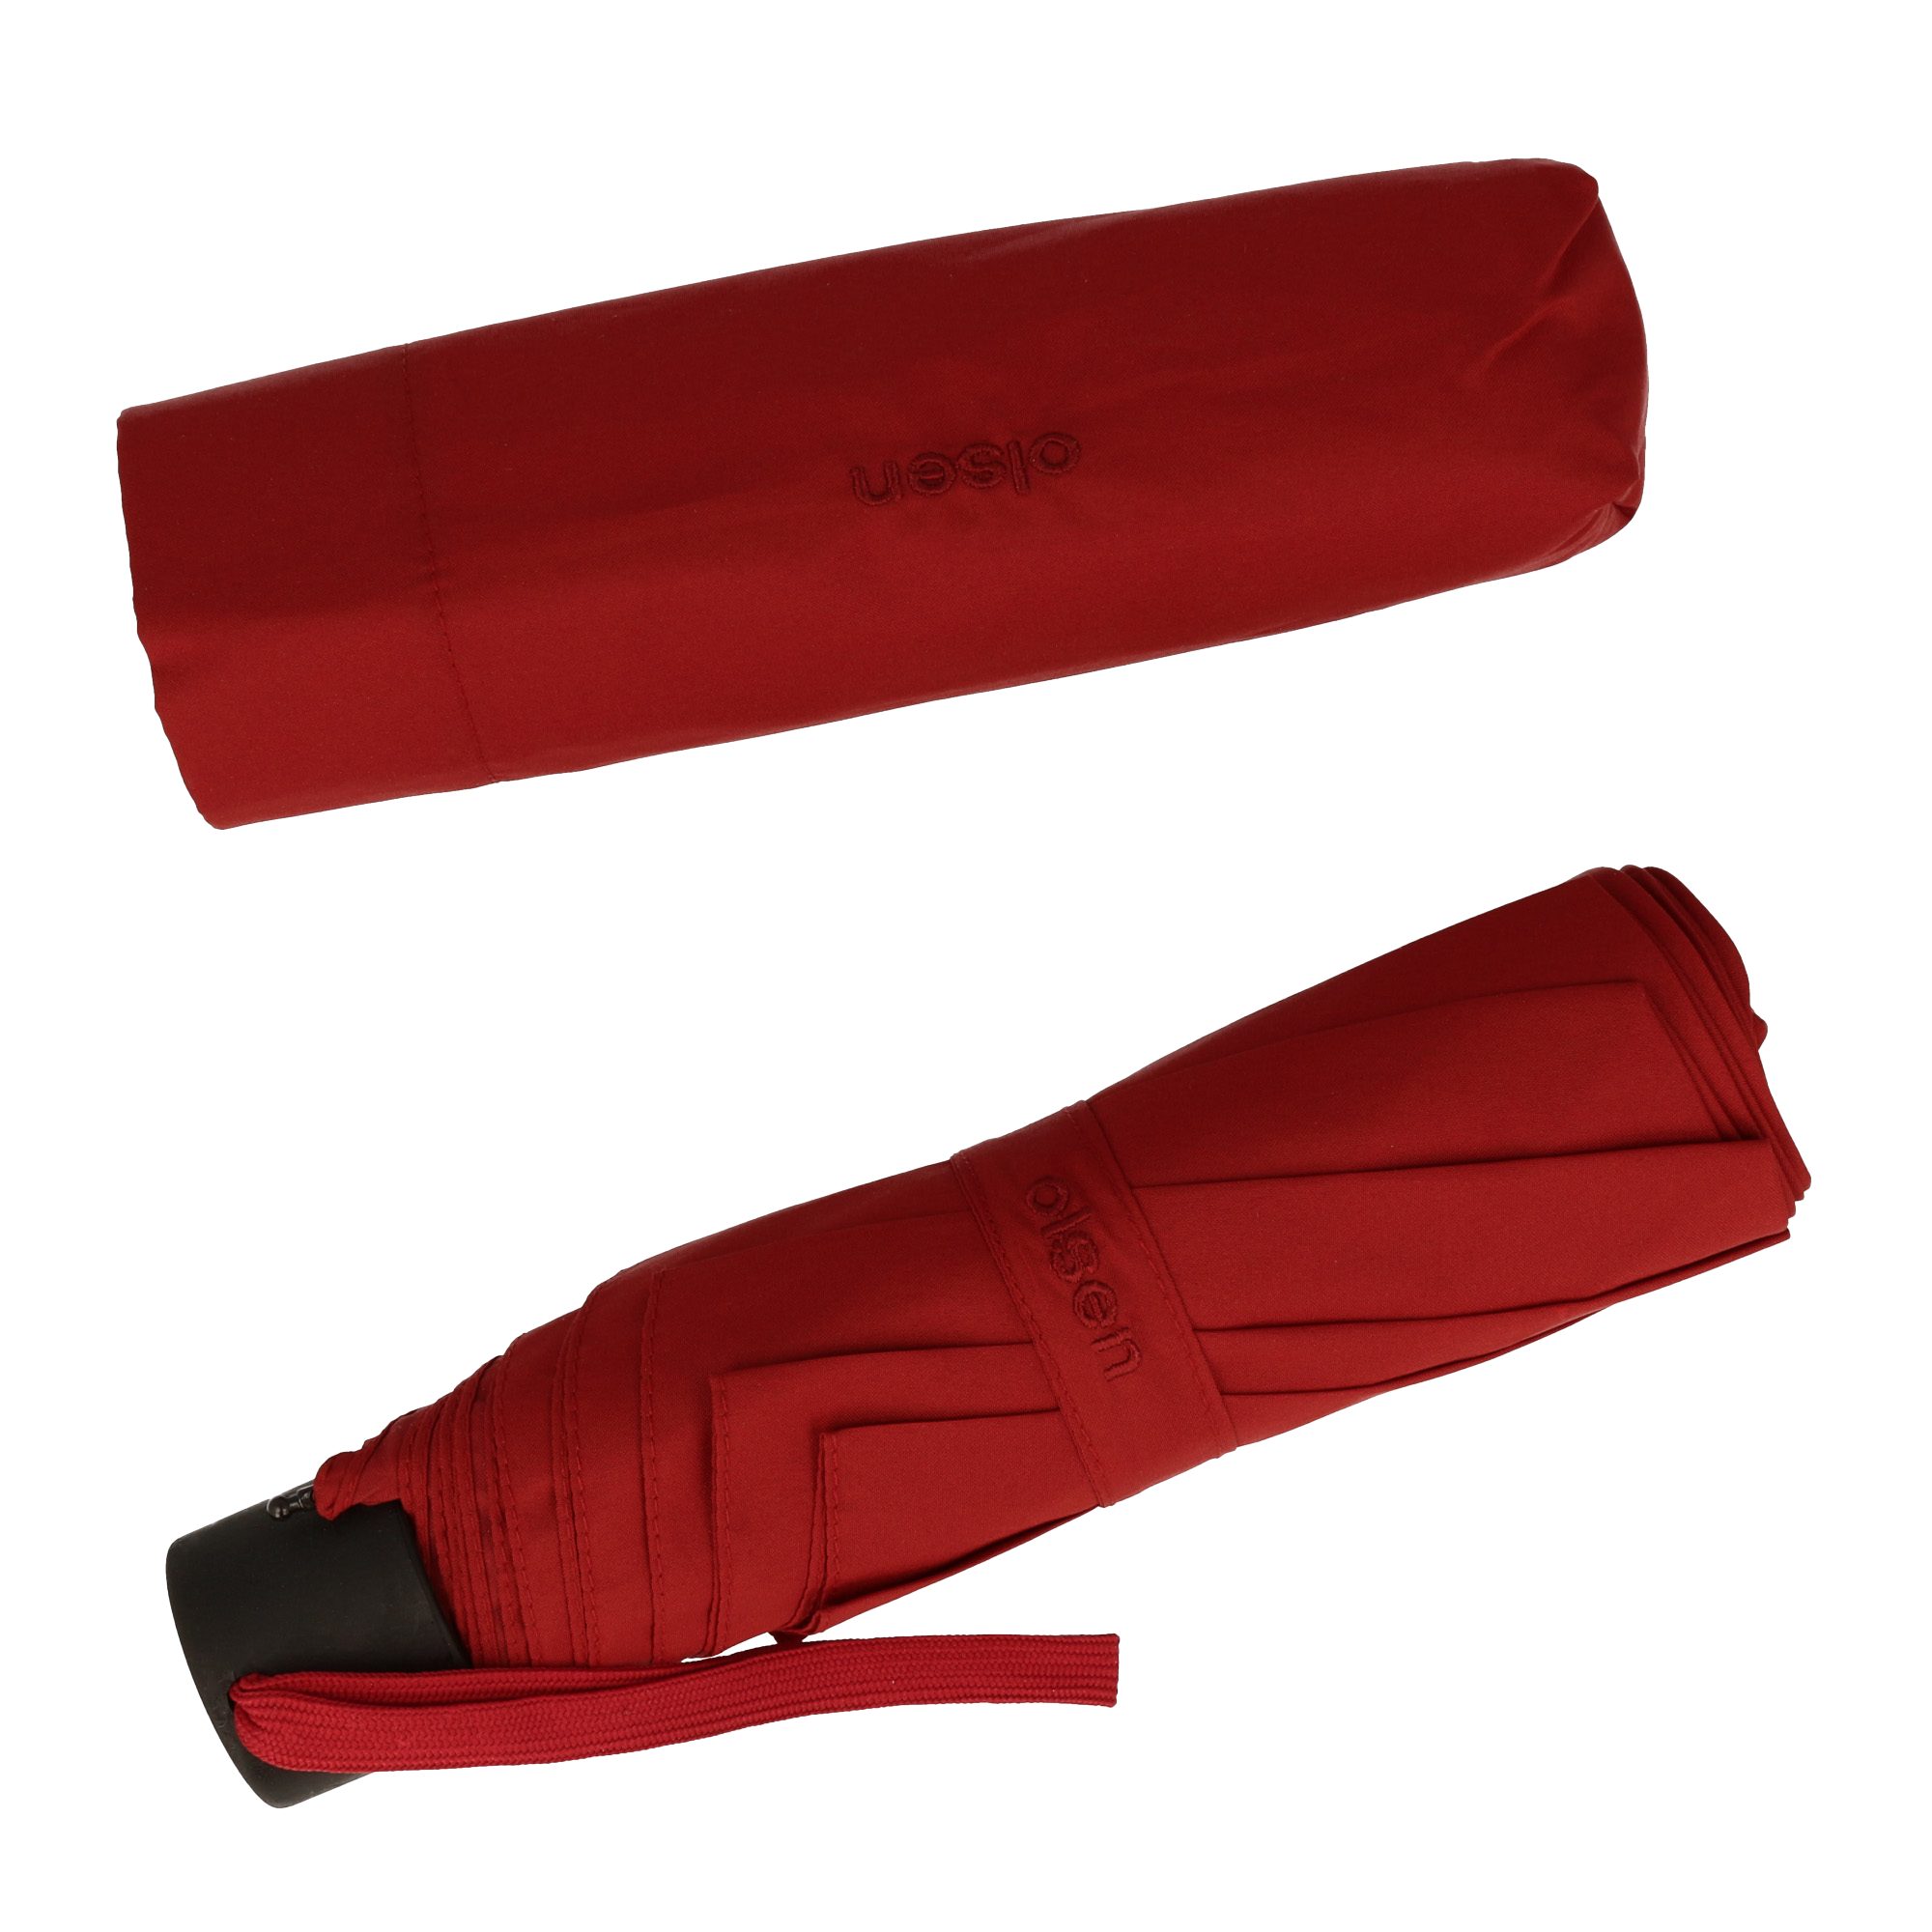 Olsen Taschenregenschirm Kleiner Regenschirm für die Handtasche, in fröhlichen Farben Rot